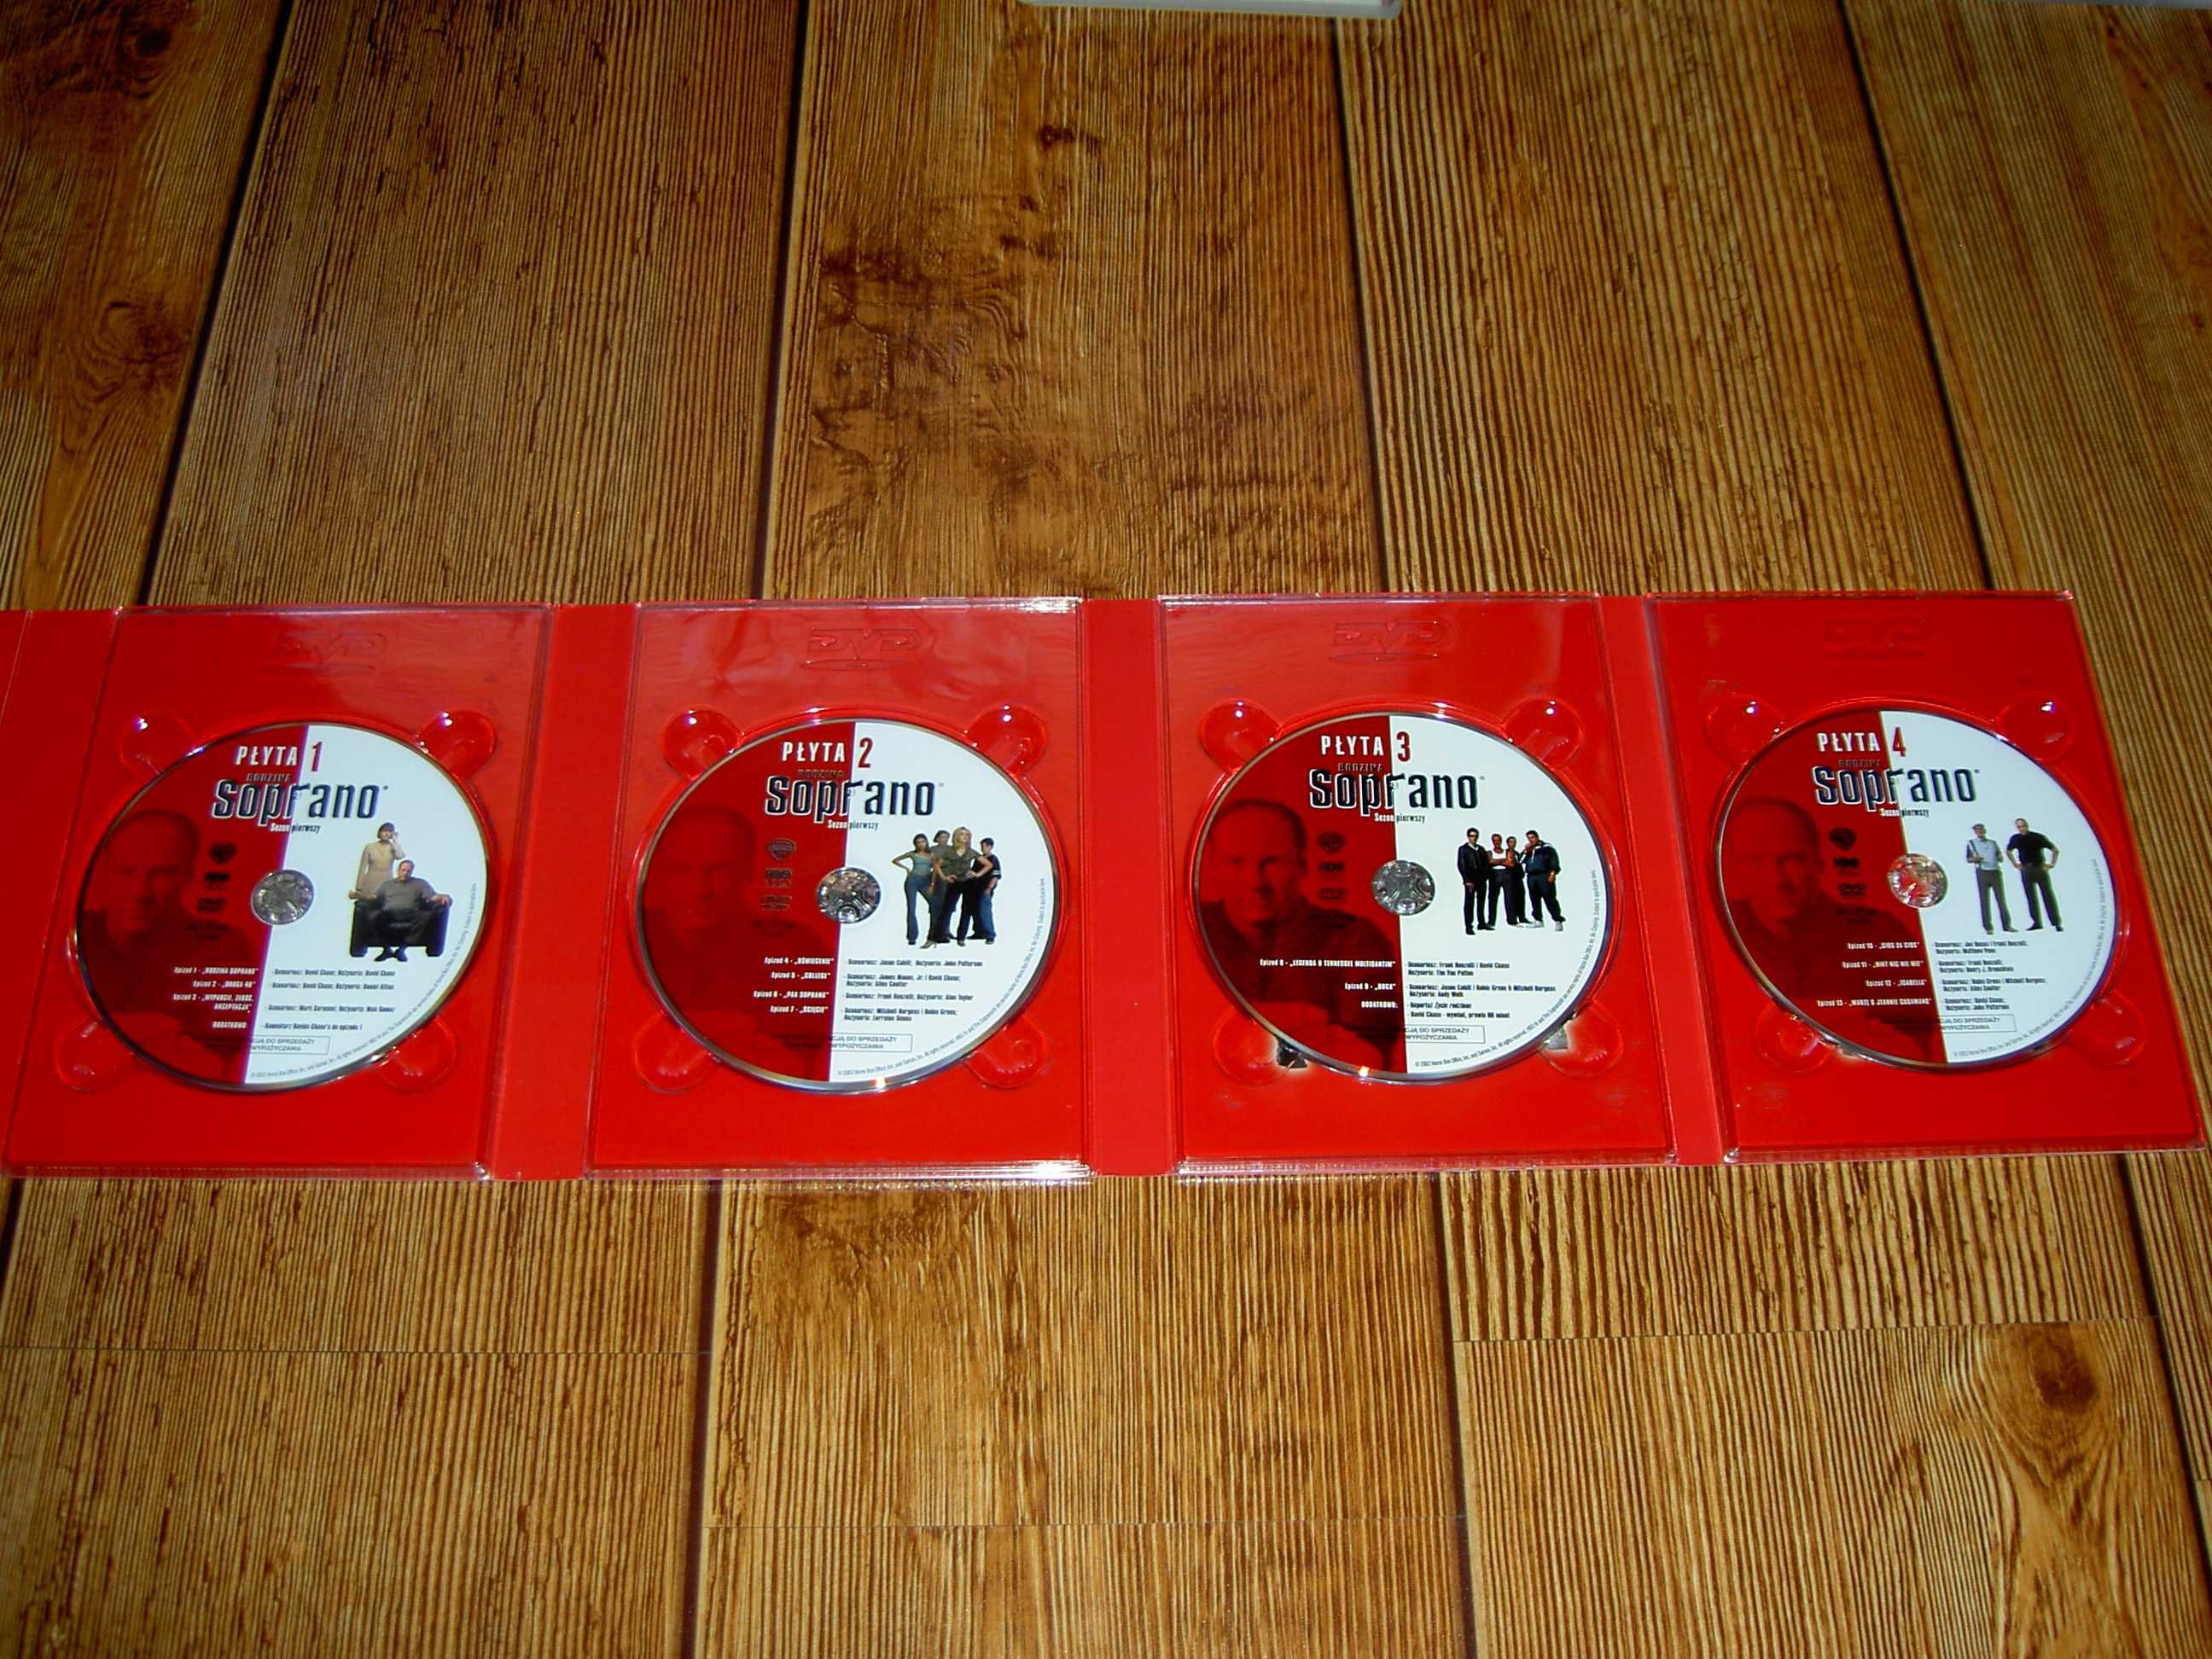 Rodzina Soprano sezon 1 pierwszy 13 odcinków 4 DVD napisy polskie